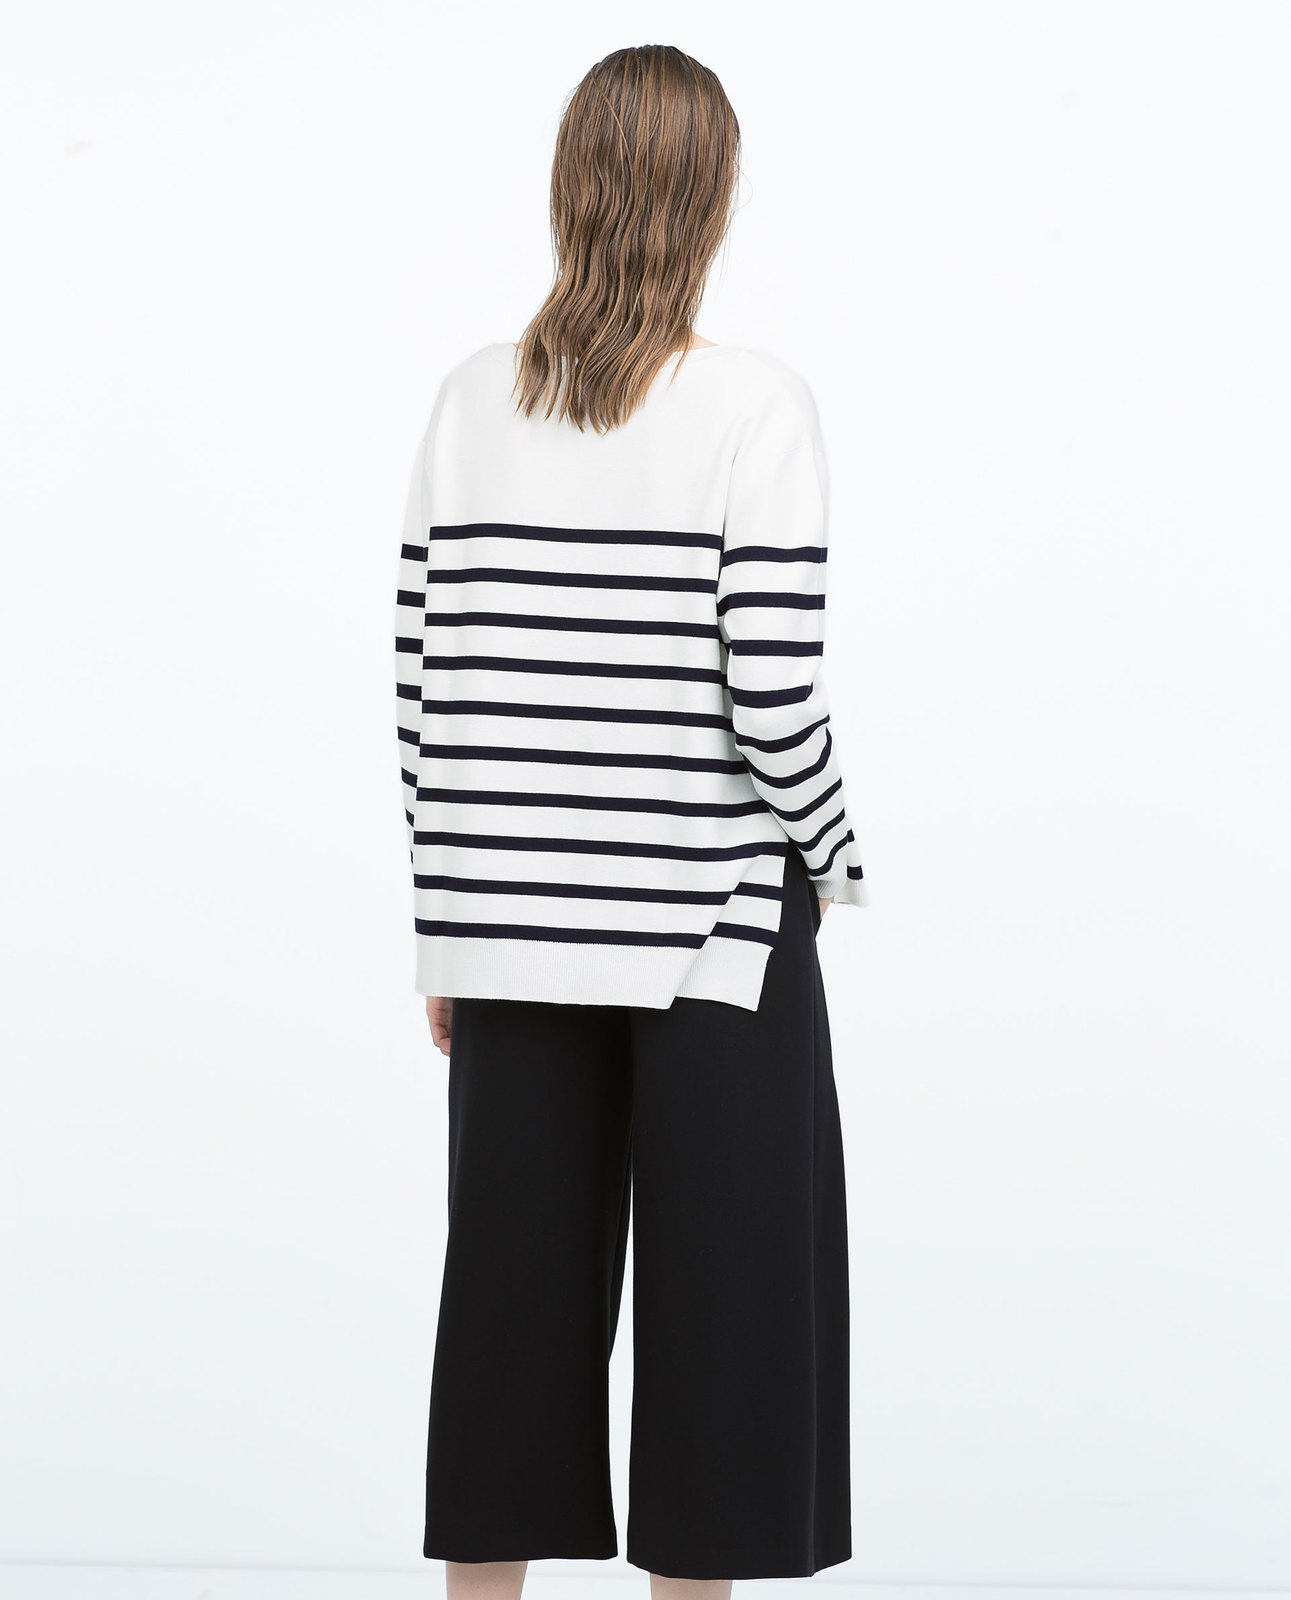 Zara tengerészcsíkos fekete-fehér pulóver 2015.02.23 #74921 fotója